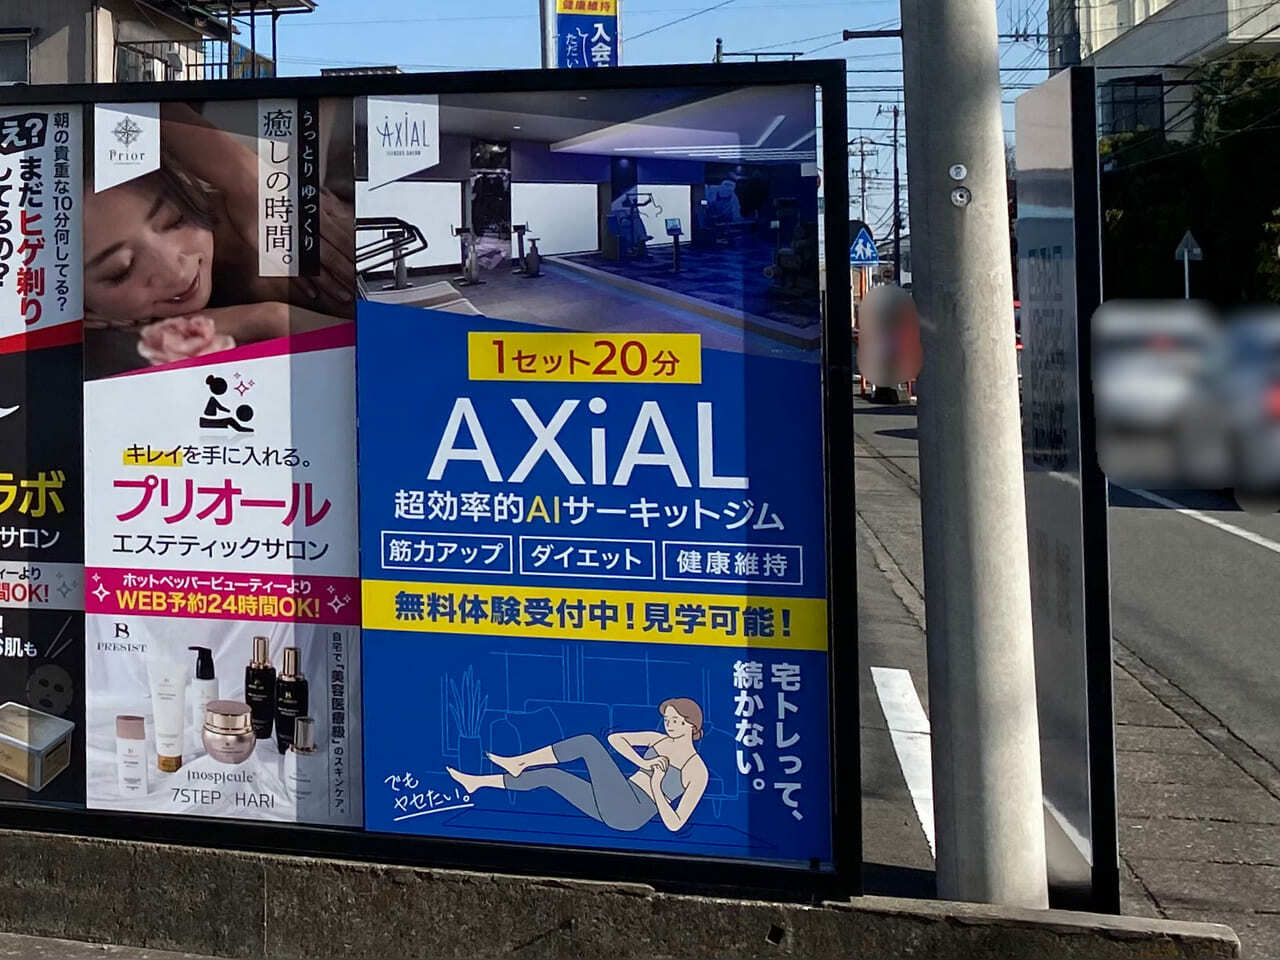 AXiAL 高崎店